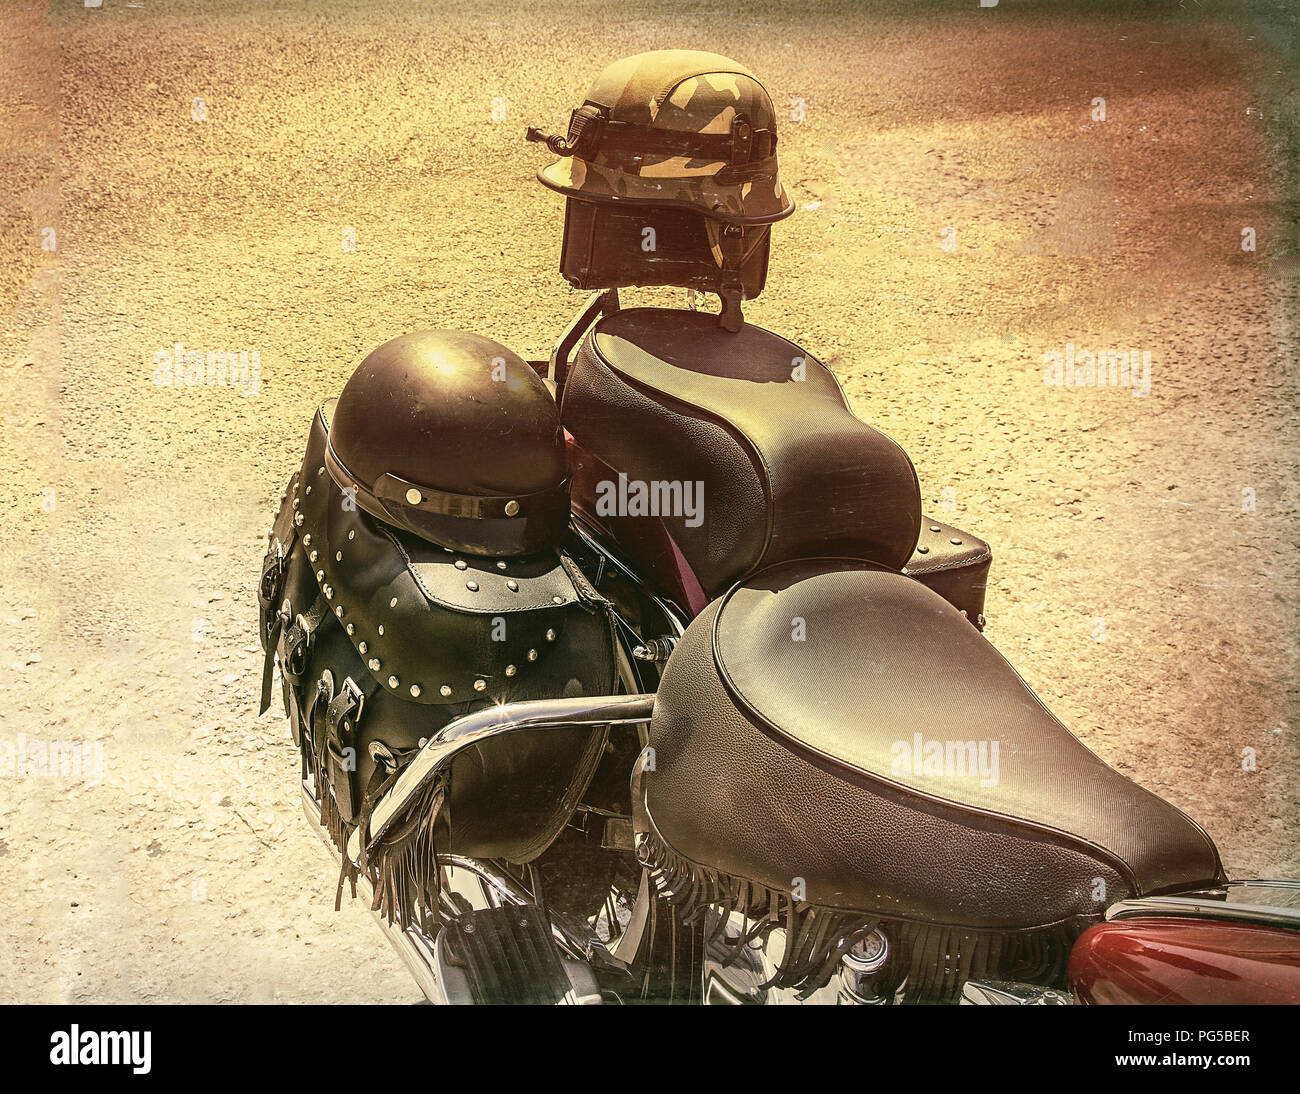 Zwei Sturzhelme für Sie und Ihn auf der Rückseite eines klassischen Motorrad. Alte fotografische Wirkung. Stock Bild Stockfoto